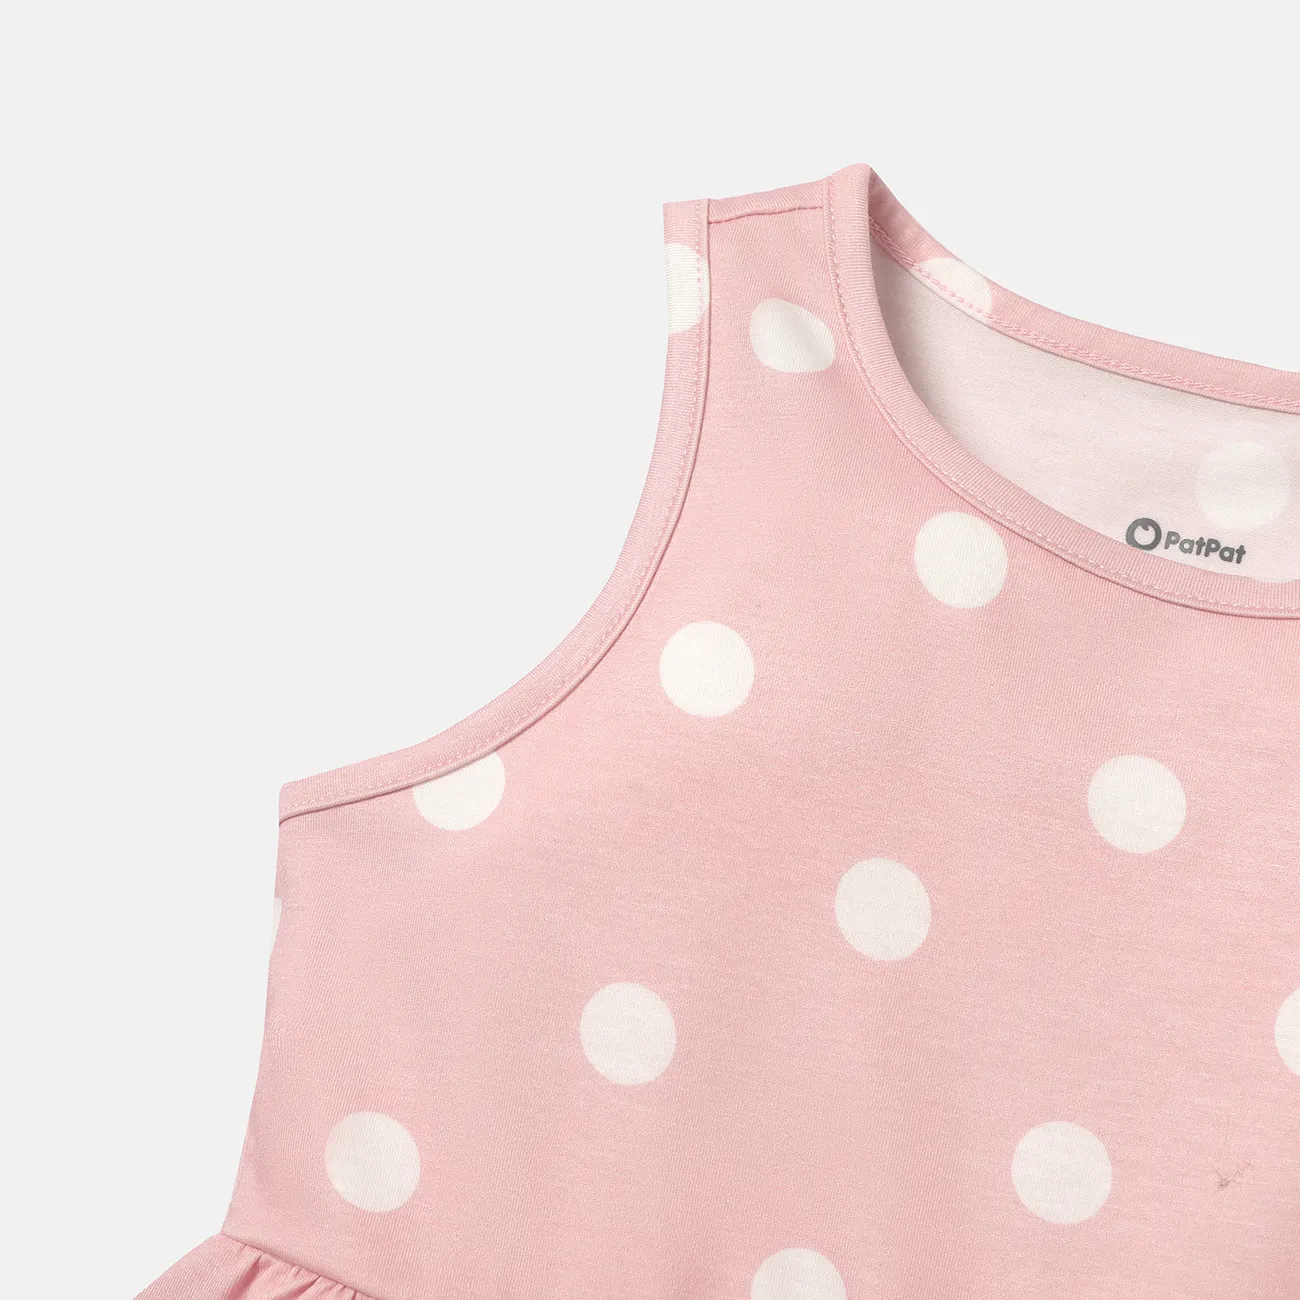 Ärmelloses Kleid mit Herzdruck/Tupfen für Kleinkinder/Kindermädchen rosa big image 1